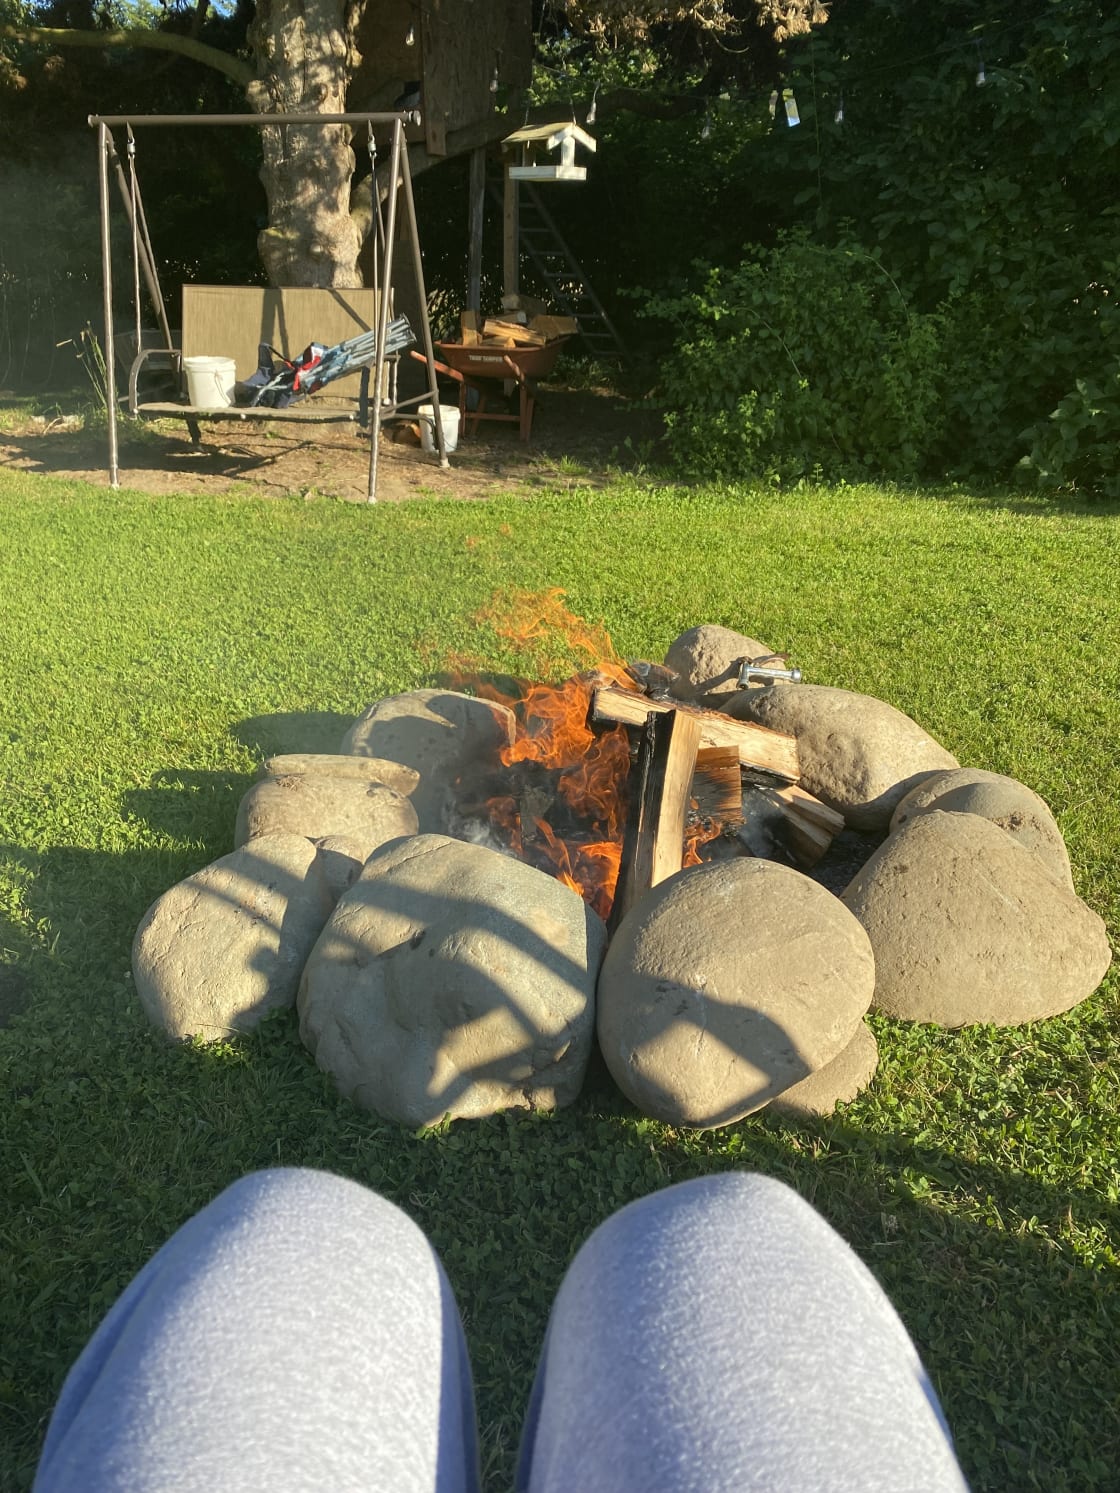 Enjoy a evening next to the fire